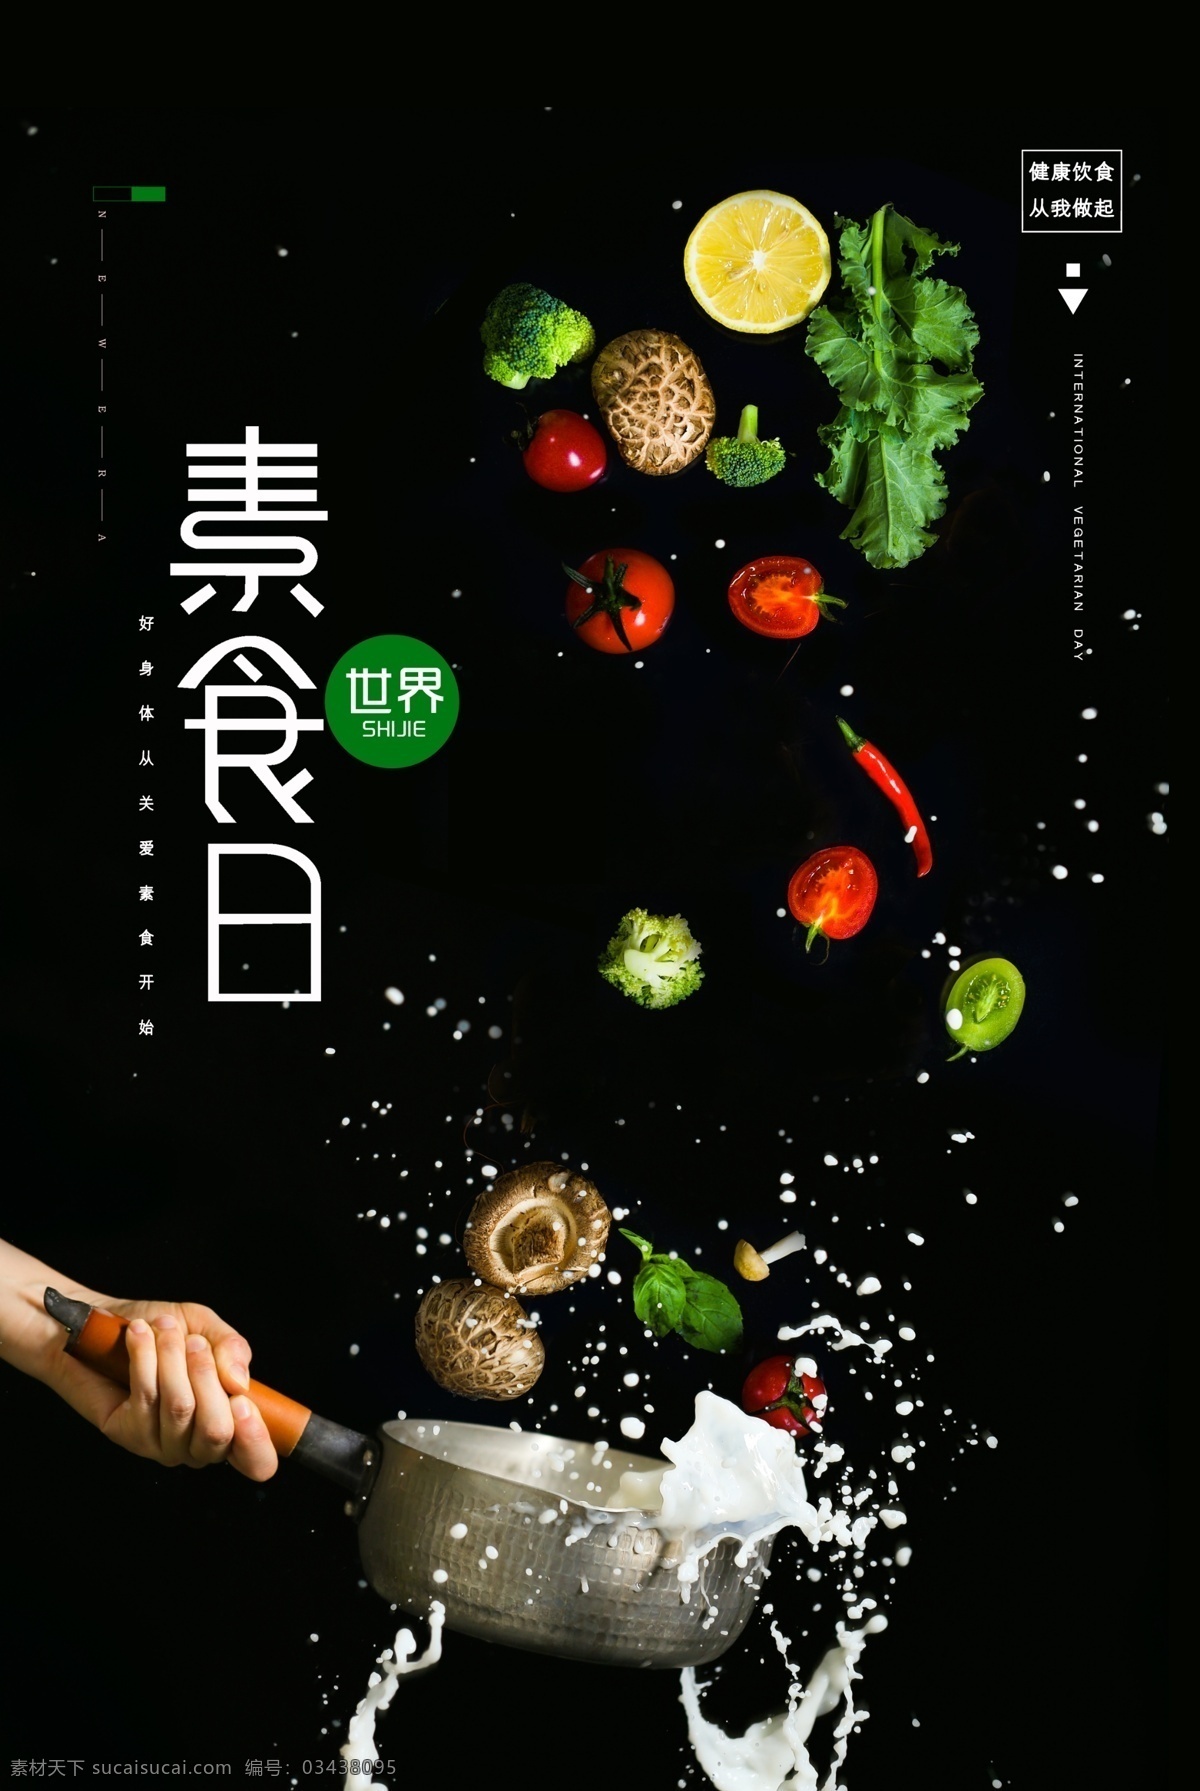 素食 日 活动 宣传 公益 优惠 套餐 海报 素食日 套餐海报